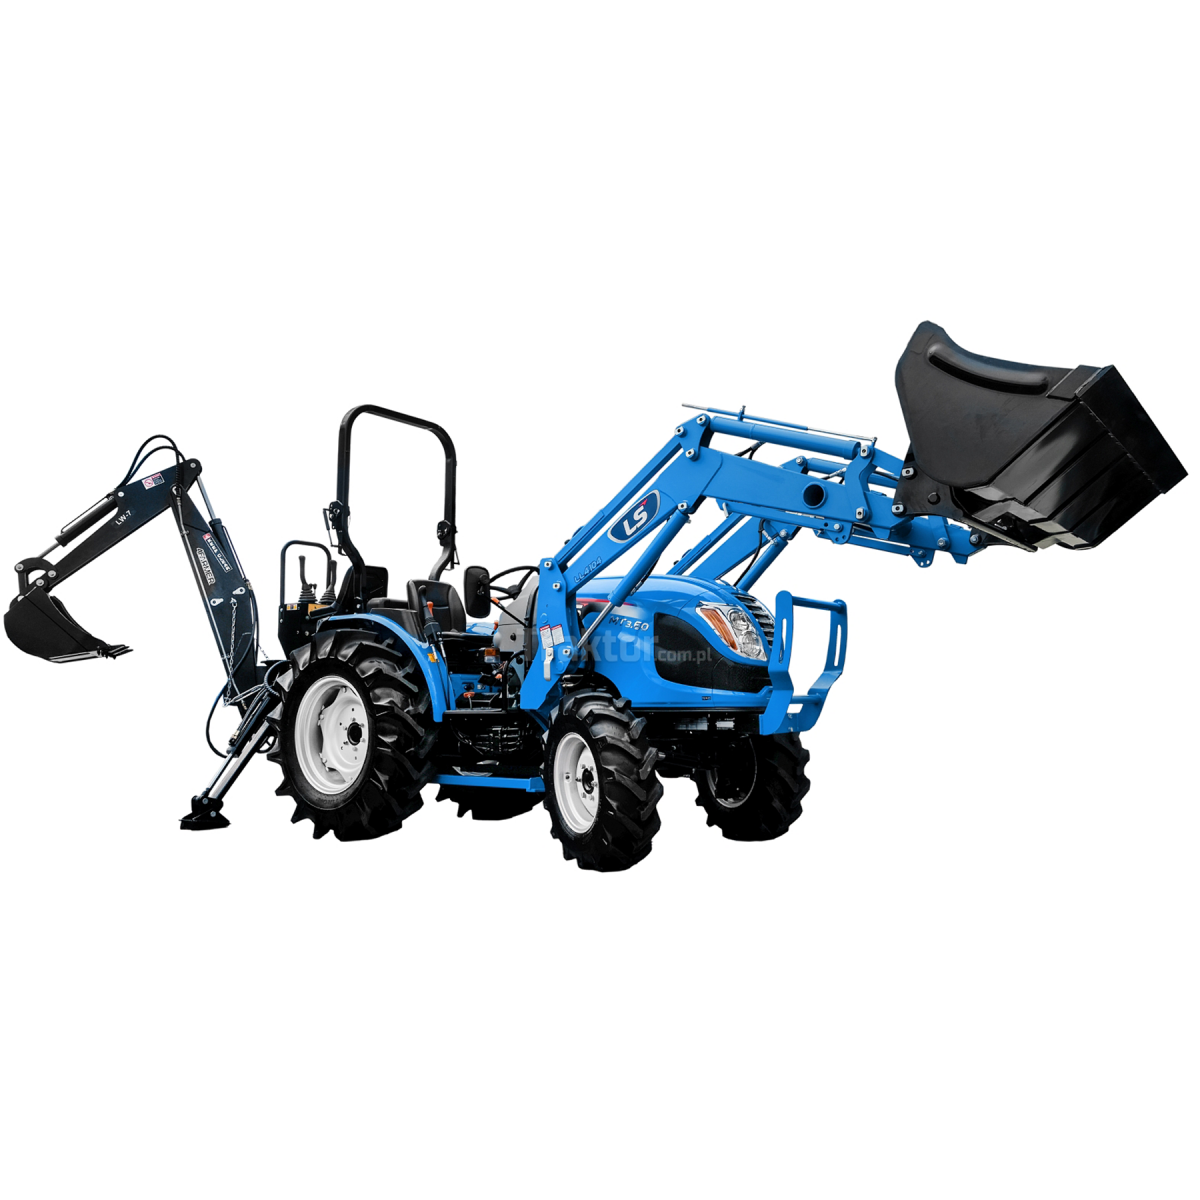 LS Tractor MT3.60 MEC 4x4 - 57 HP + LS LL4104 front loader + LW-7 4FARMER excavator